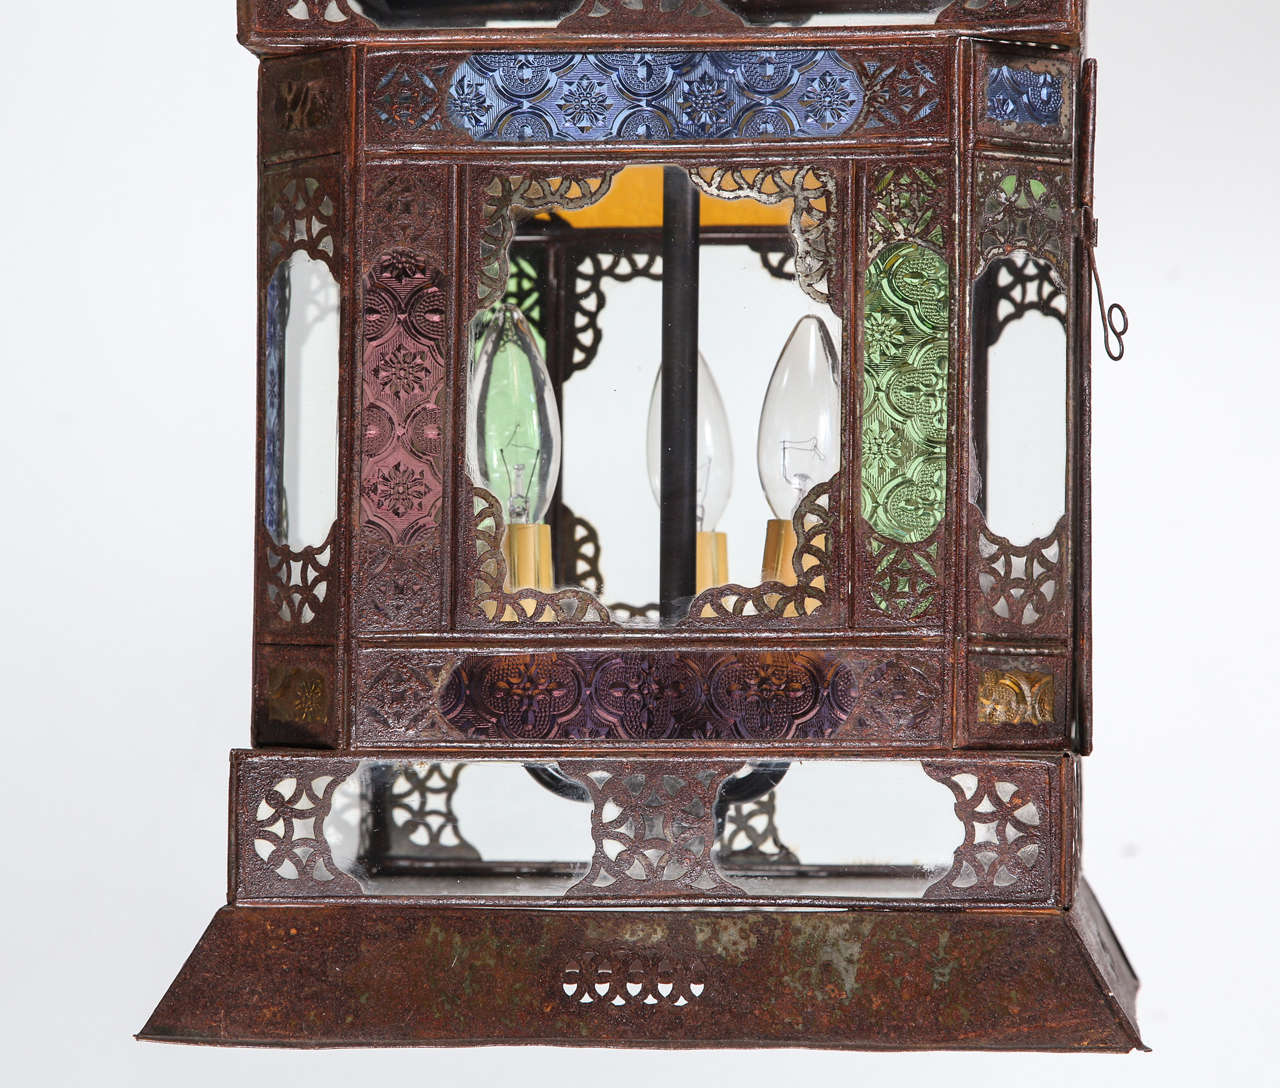 Très beau luminaire artisanal en verre marocain, pouvant être utilisé comme lampe de table ou luminaire suspendu. Verre multicolore bleu, vert, ambre et violet, arcs mauresques de chaque côté, ornés d'un motif filigrané, verre transparent dans le